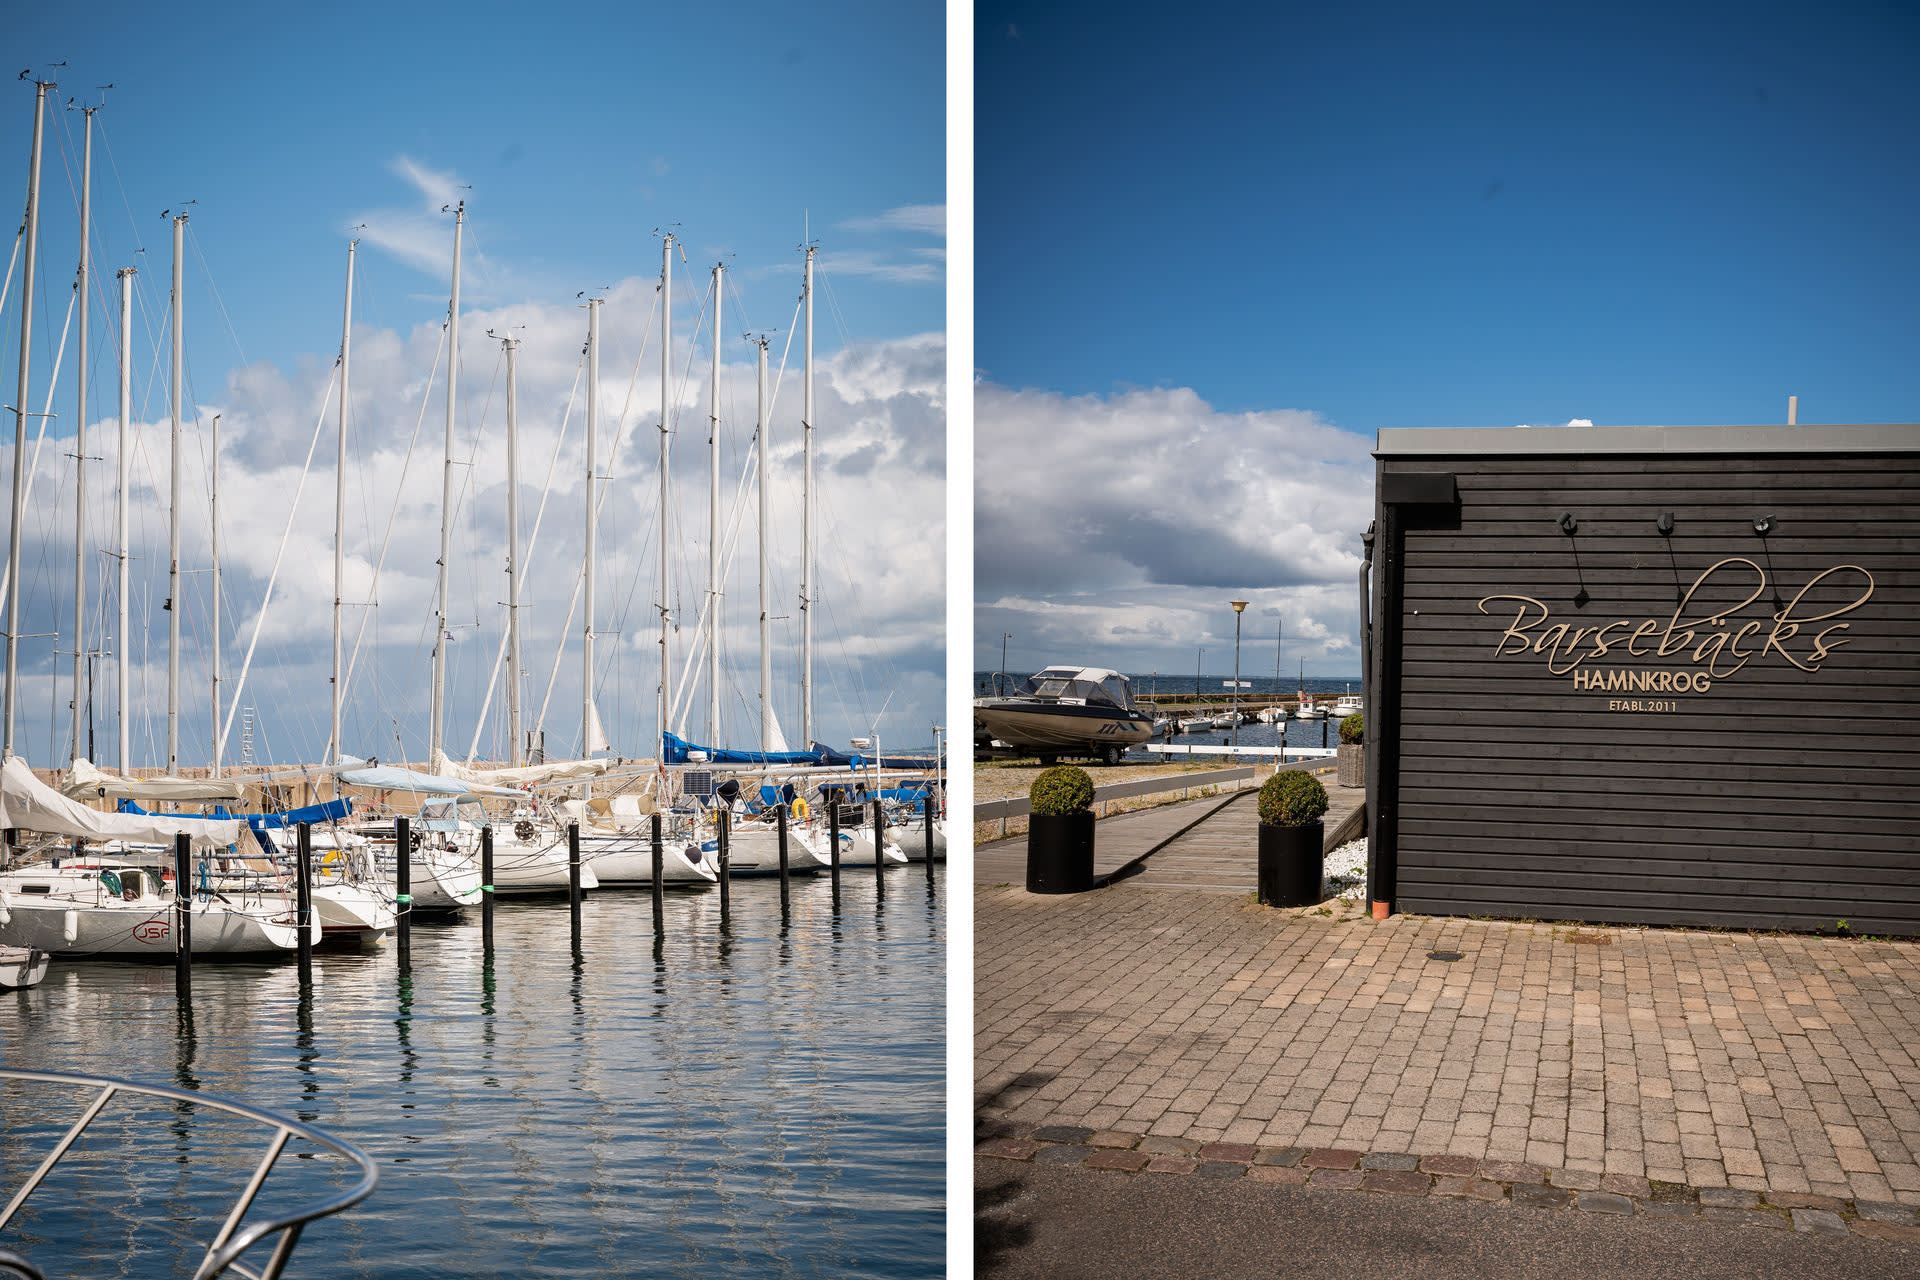 I hamnen finns Barsebäcks hamnkrog, de erbjuder god mat och dryck och har sommaröppet.